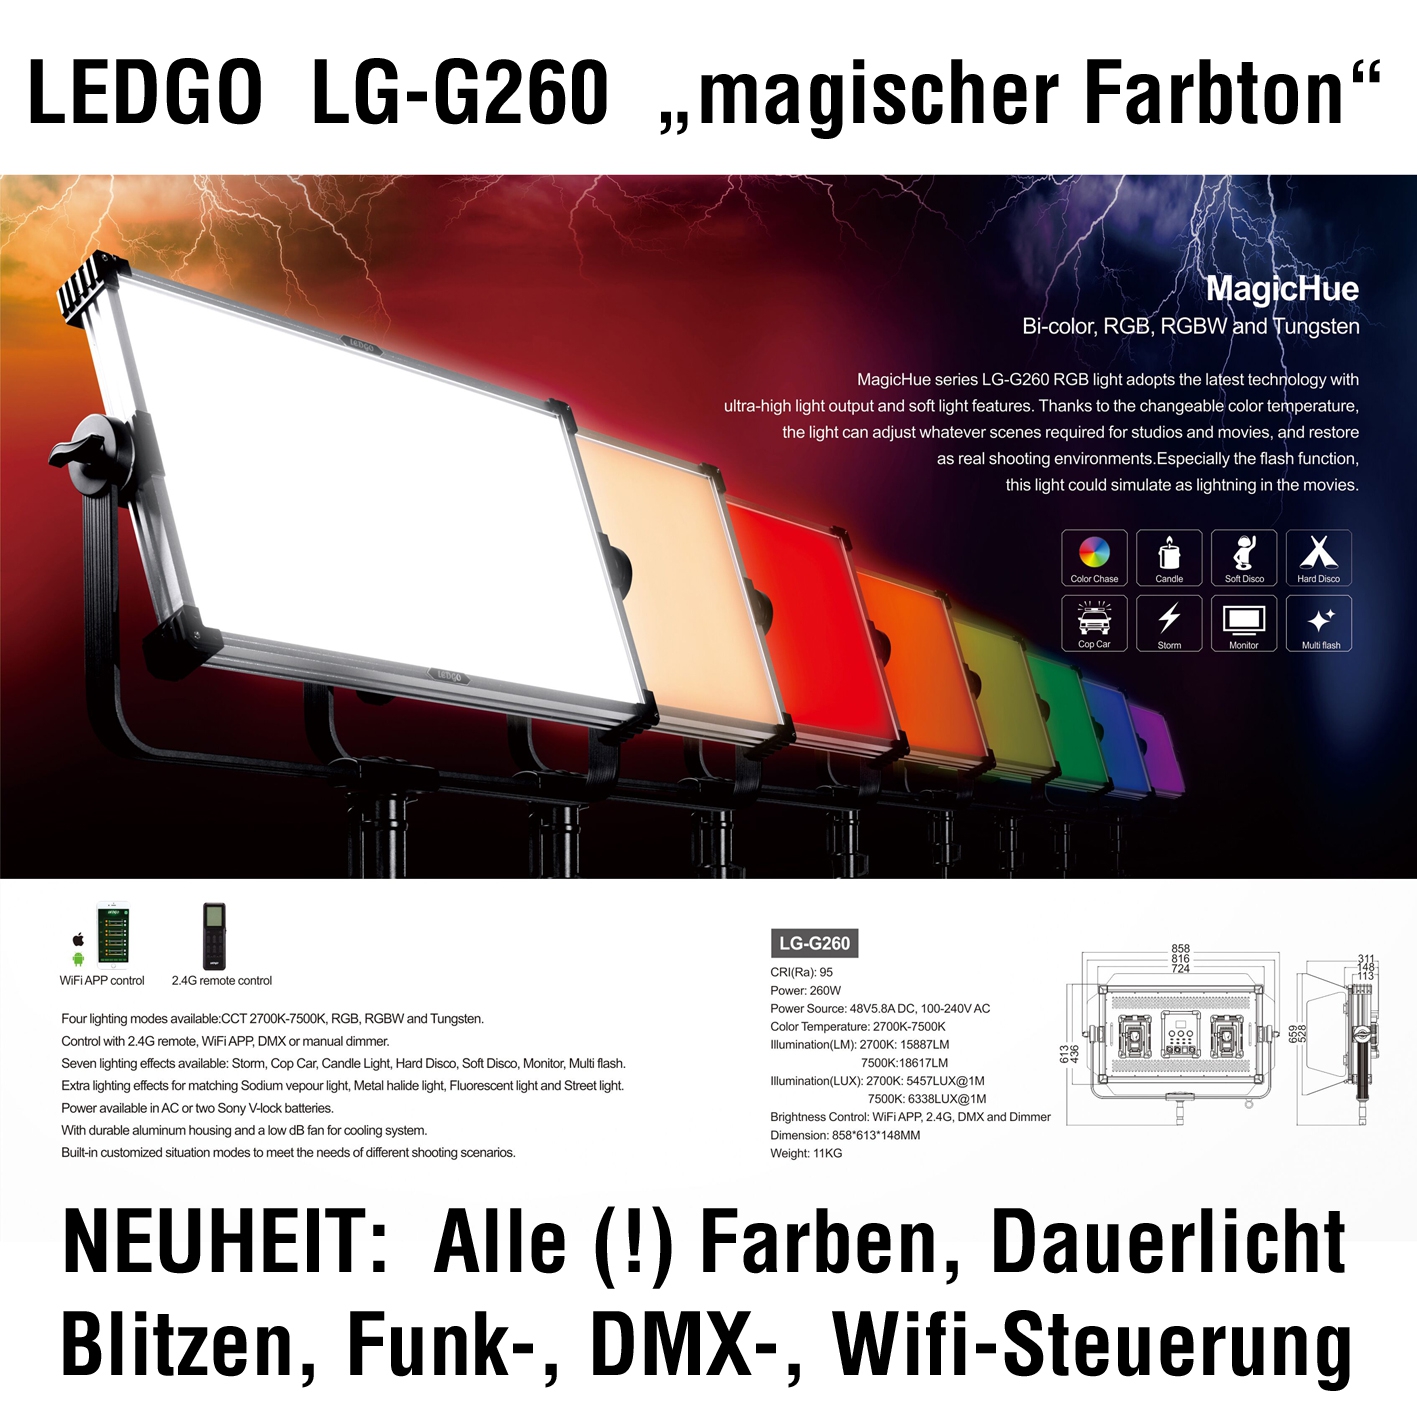 LEDGO LG-G260 - Magic Hue RGB LED Panel Light